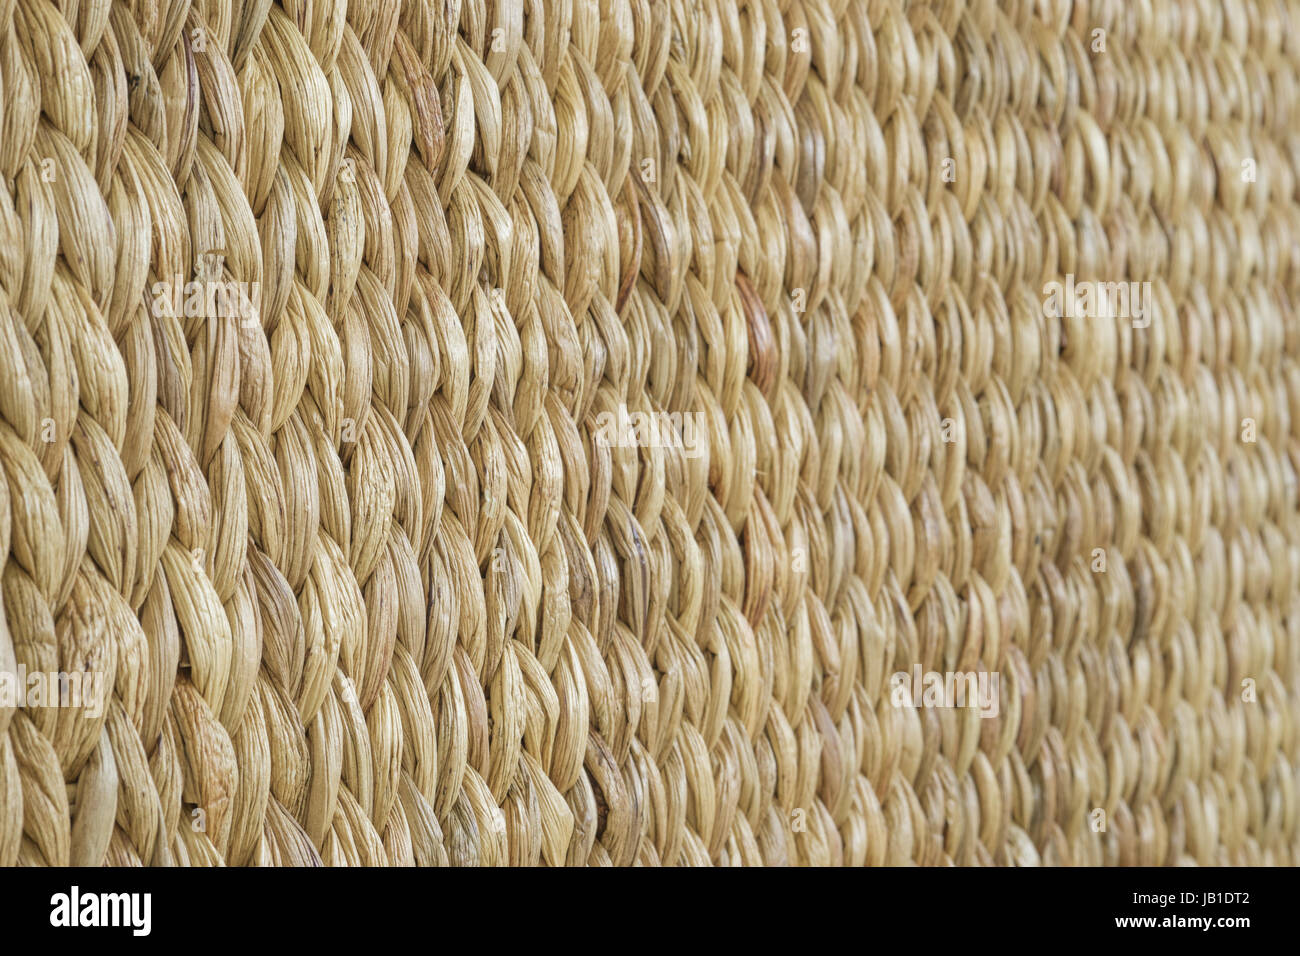 Geflecht aus Holz Reed wicker Textur Hintergrund. Schrägansicht Stockfoto